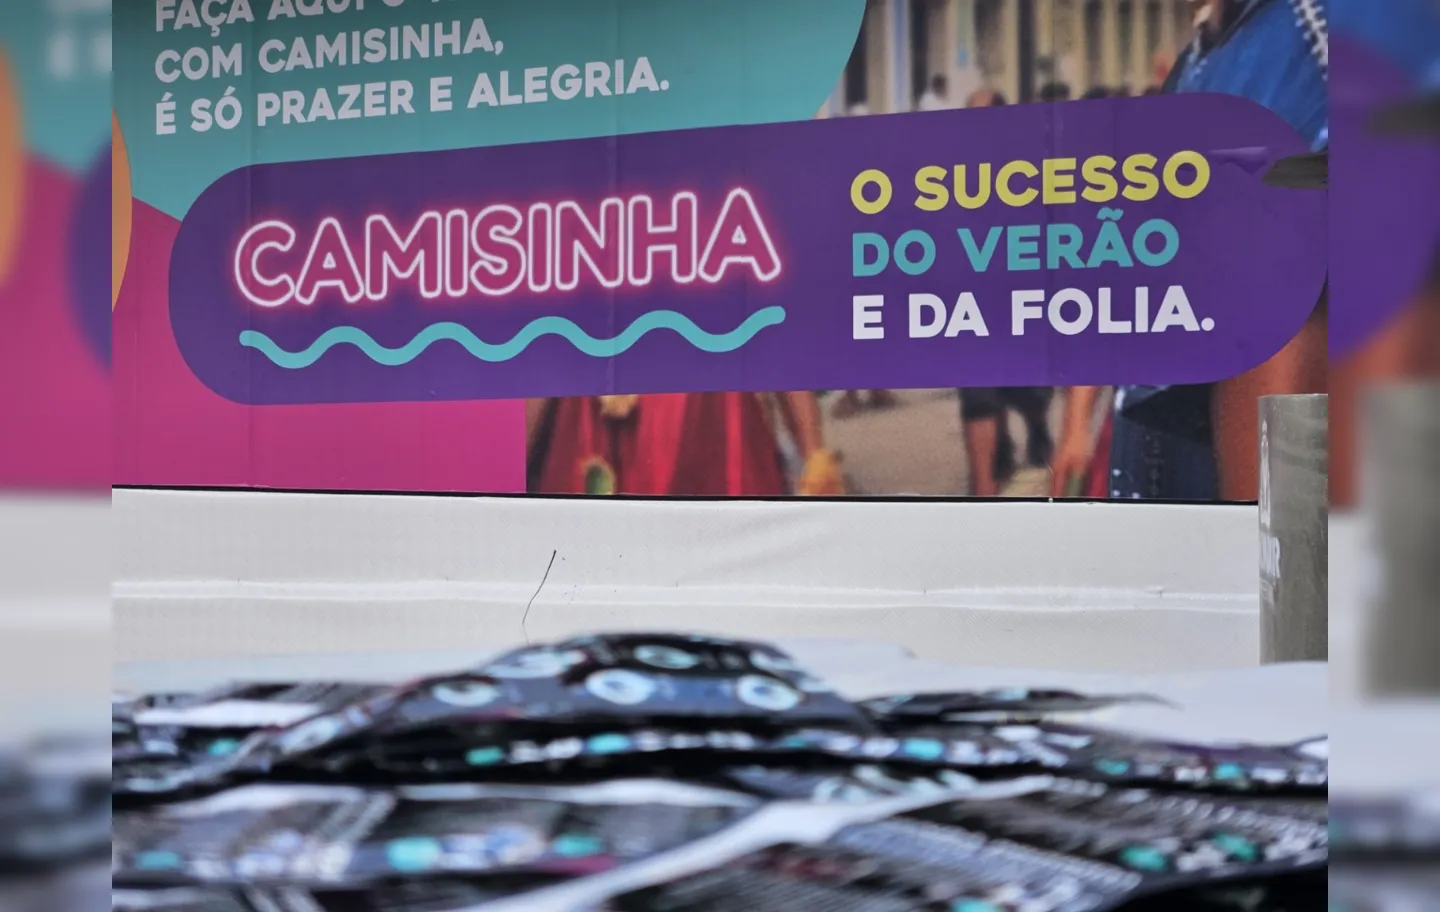 Sesab já distribuiu mais de meio milhão de preservativos no Carnaval.